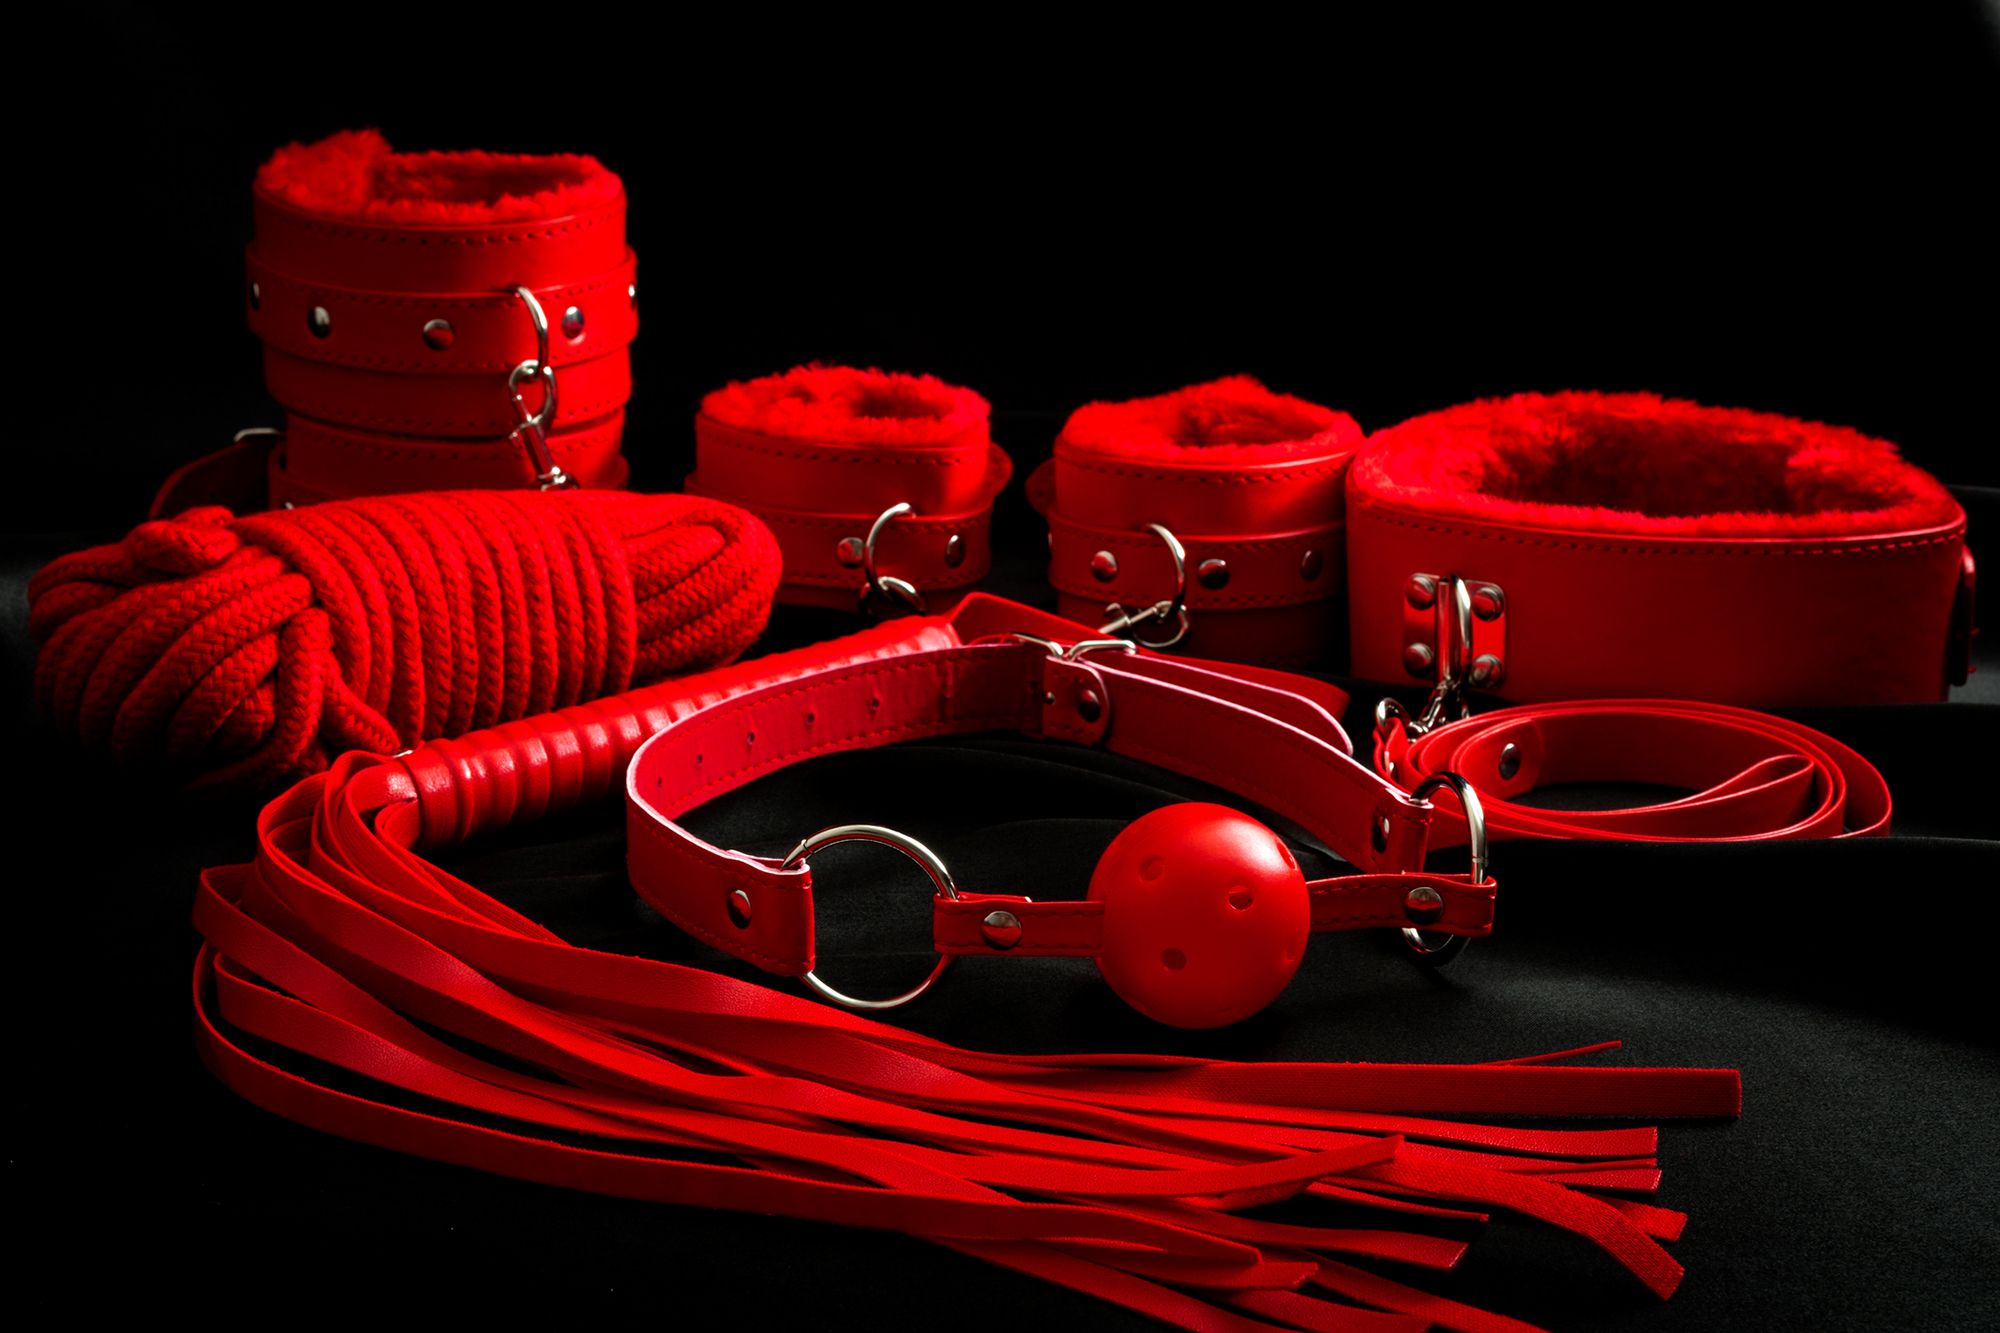 Rote BDSM-Sextoys: Knebel, Seil, Peitsche sowie Handfessel und Fußfesseln